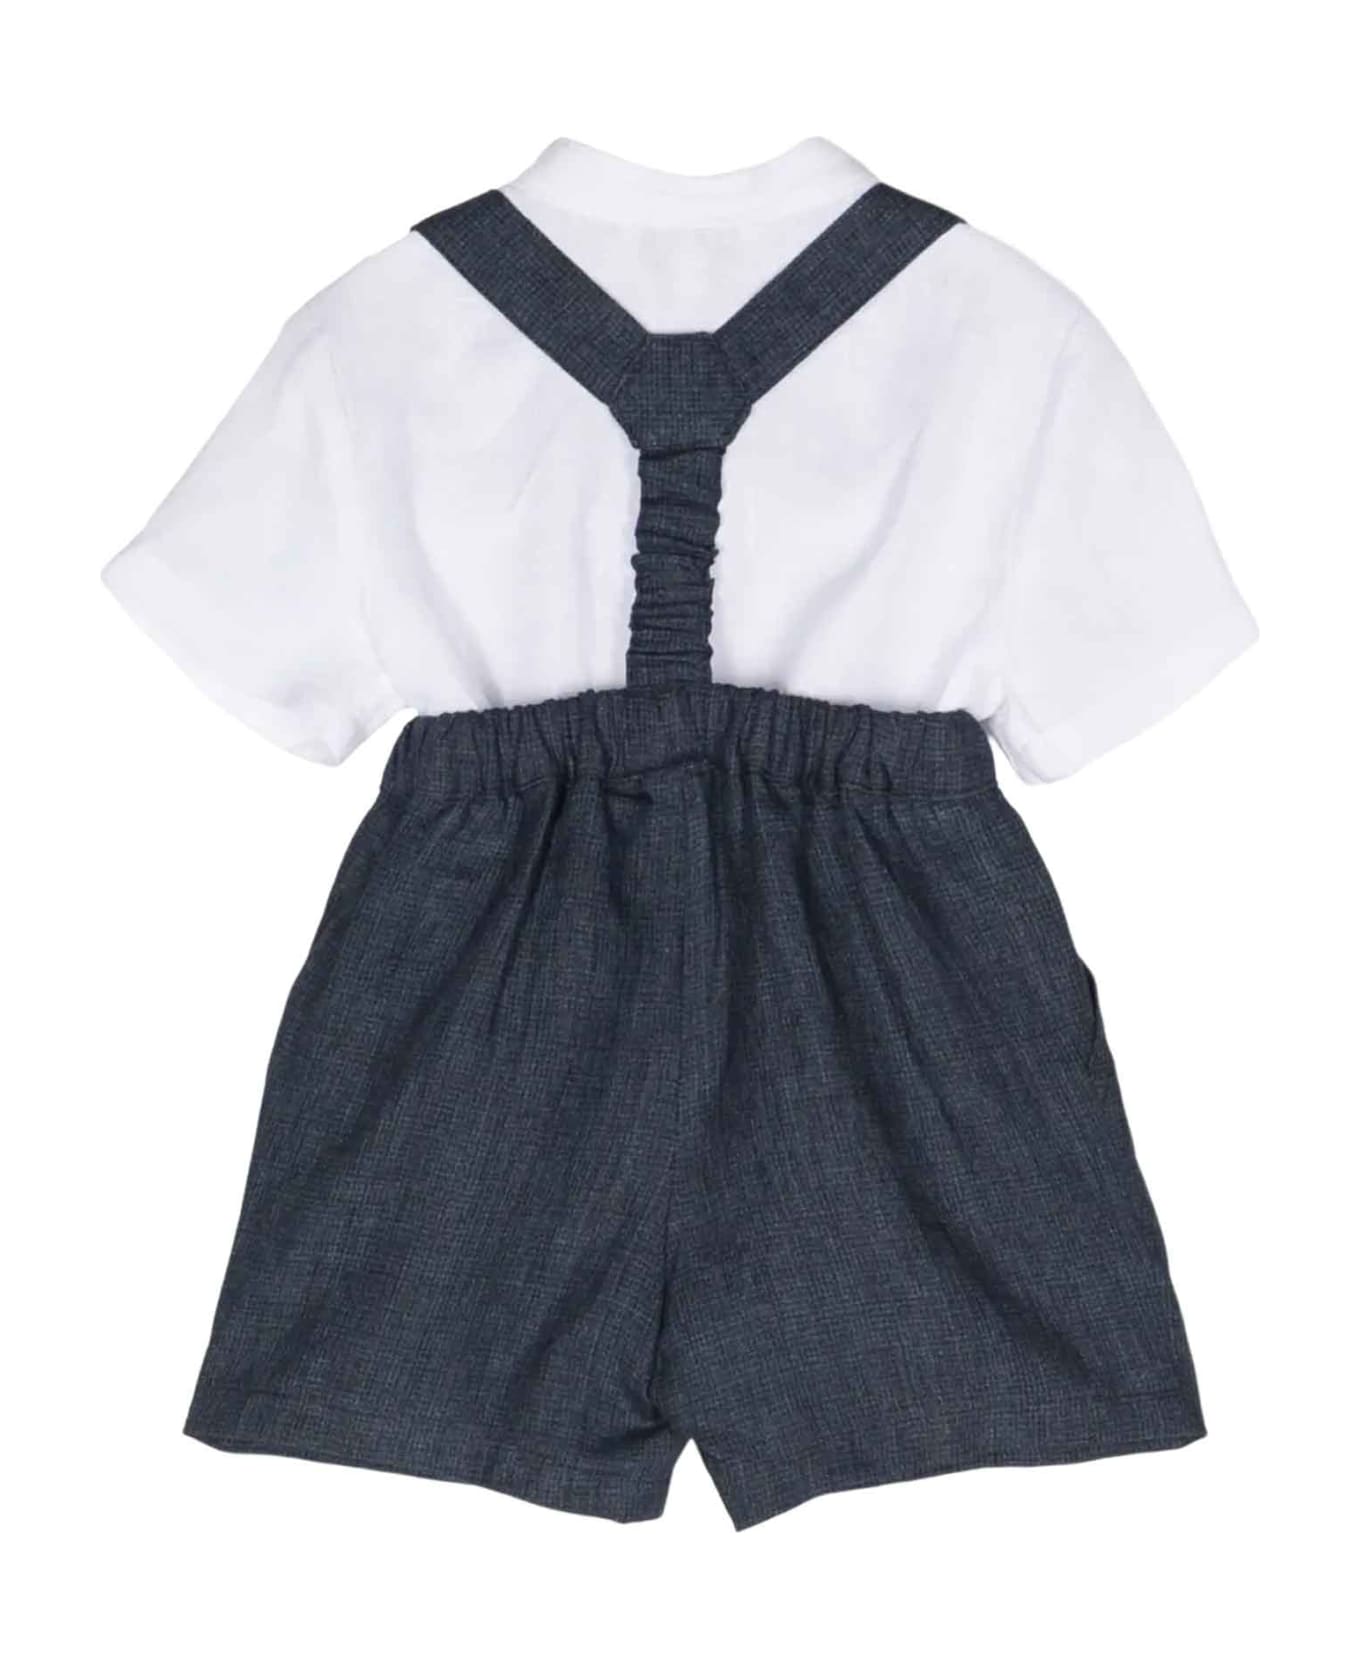 Emporio Armani Blue Shorts Set Baby Boy - Fant.Blu